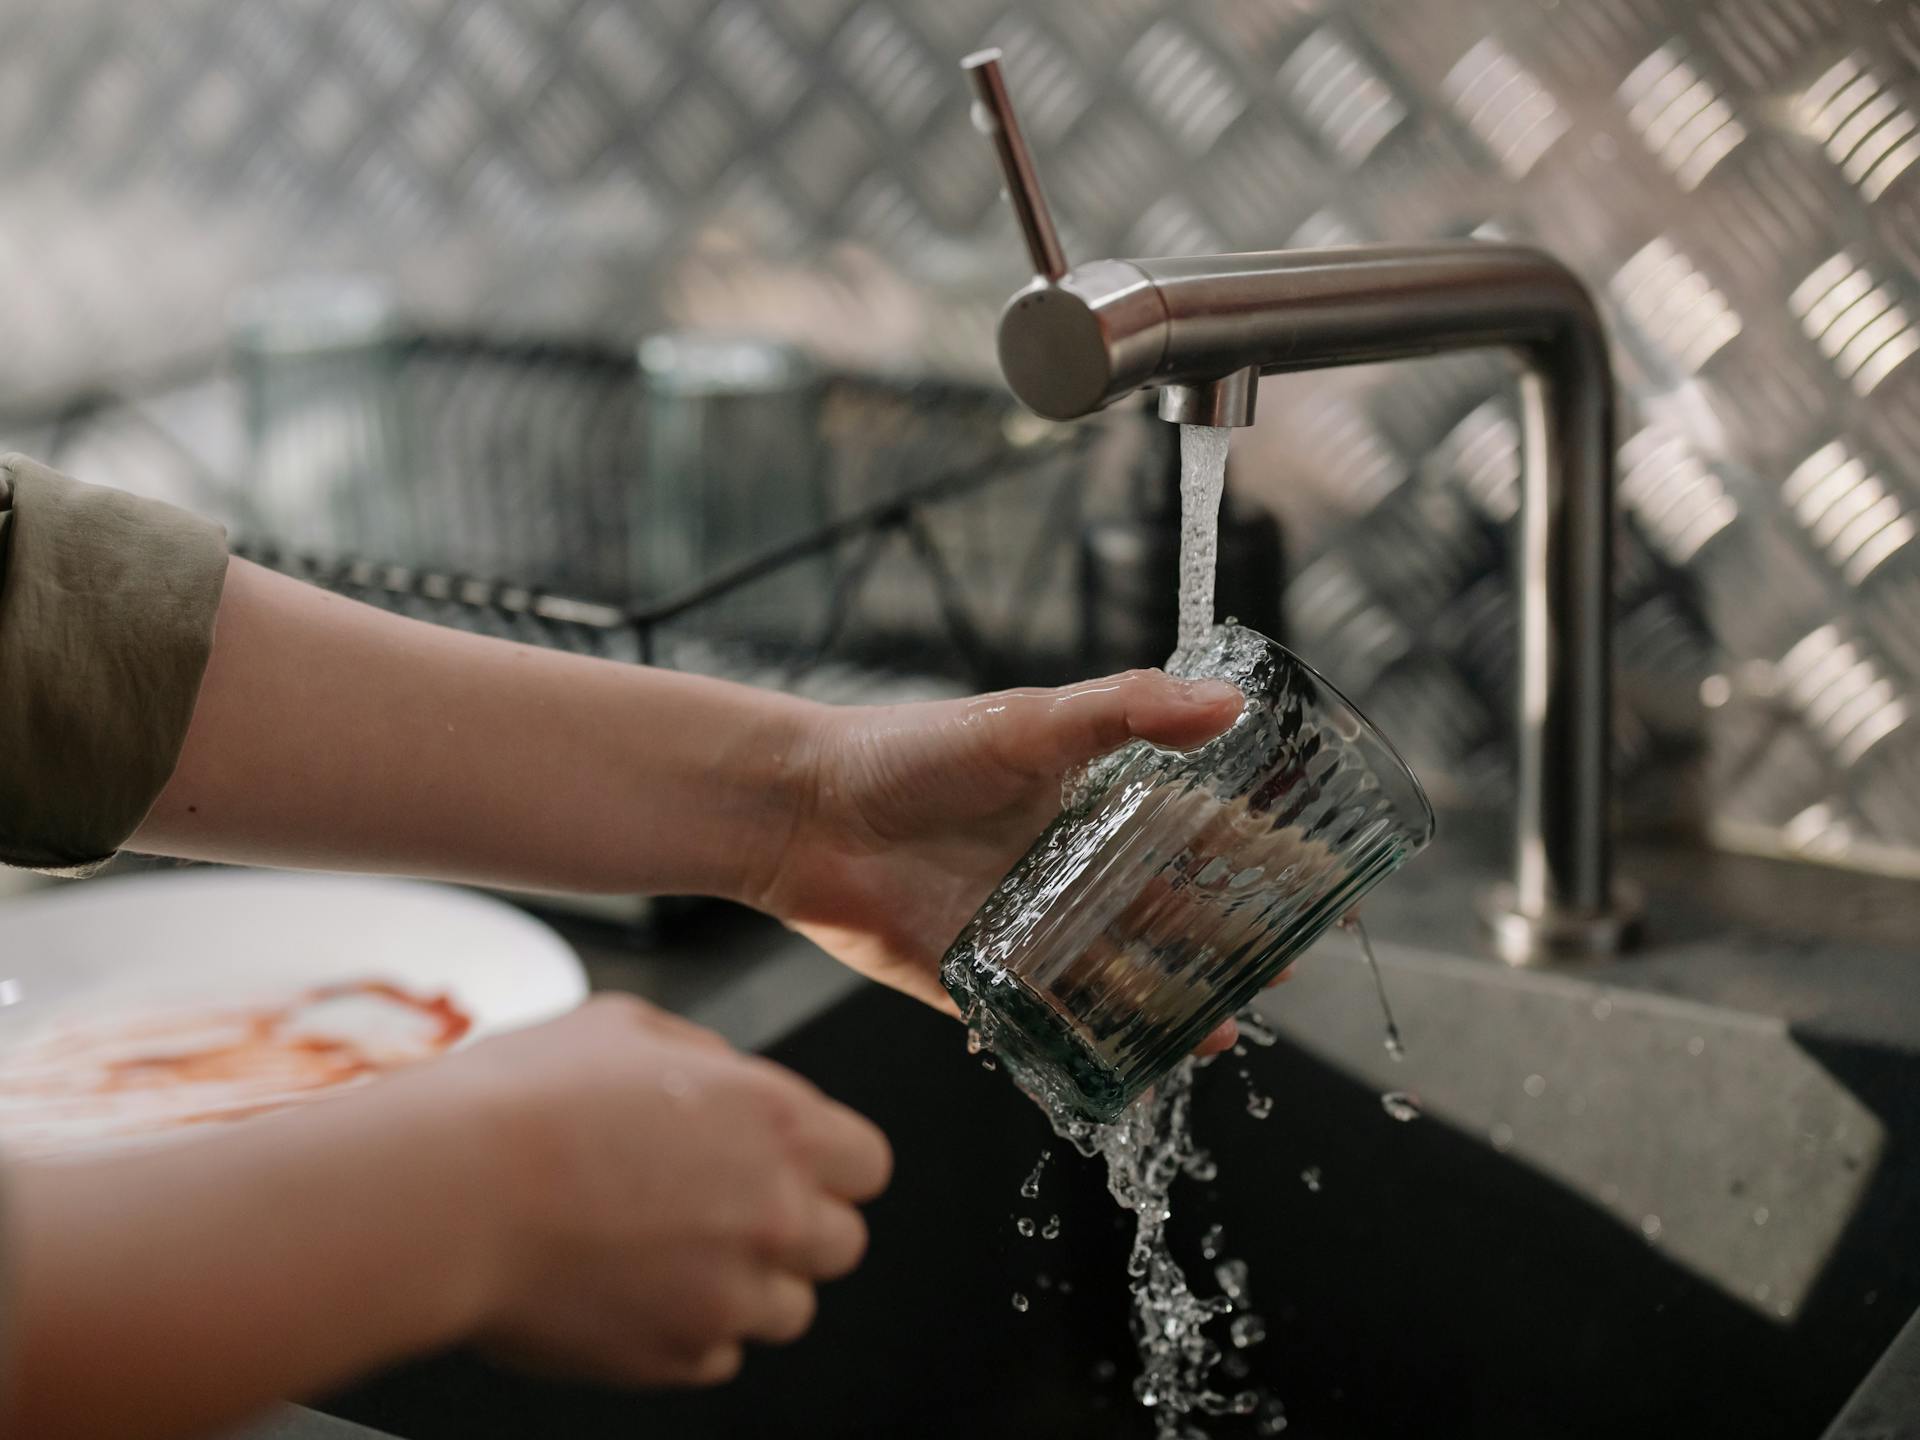 Una persona lavando un vaso | Fuente: Pexels